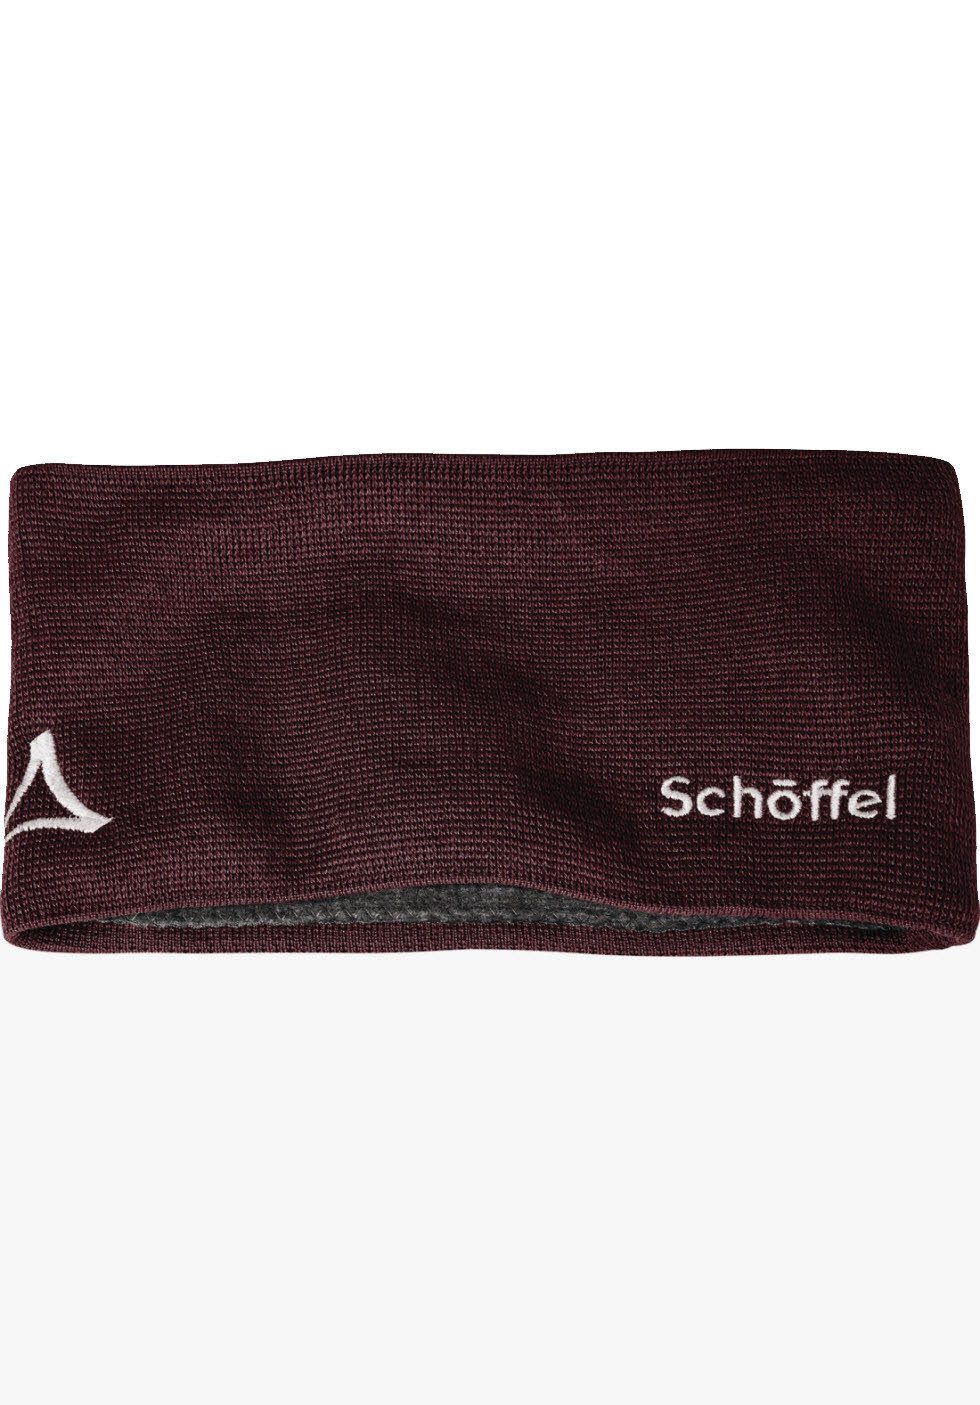 Schöffel Skimütze Knitted Headband Fornet